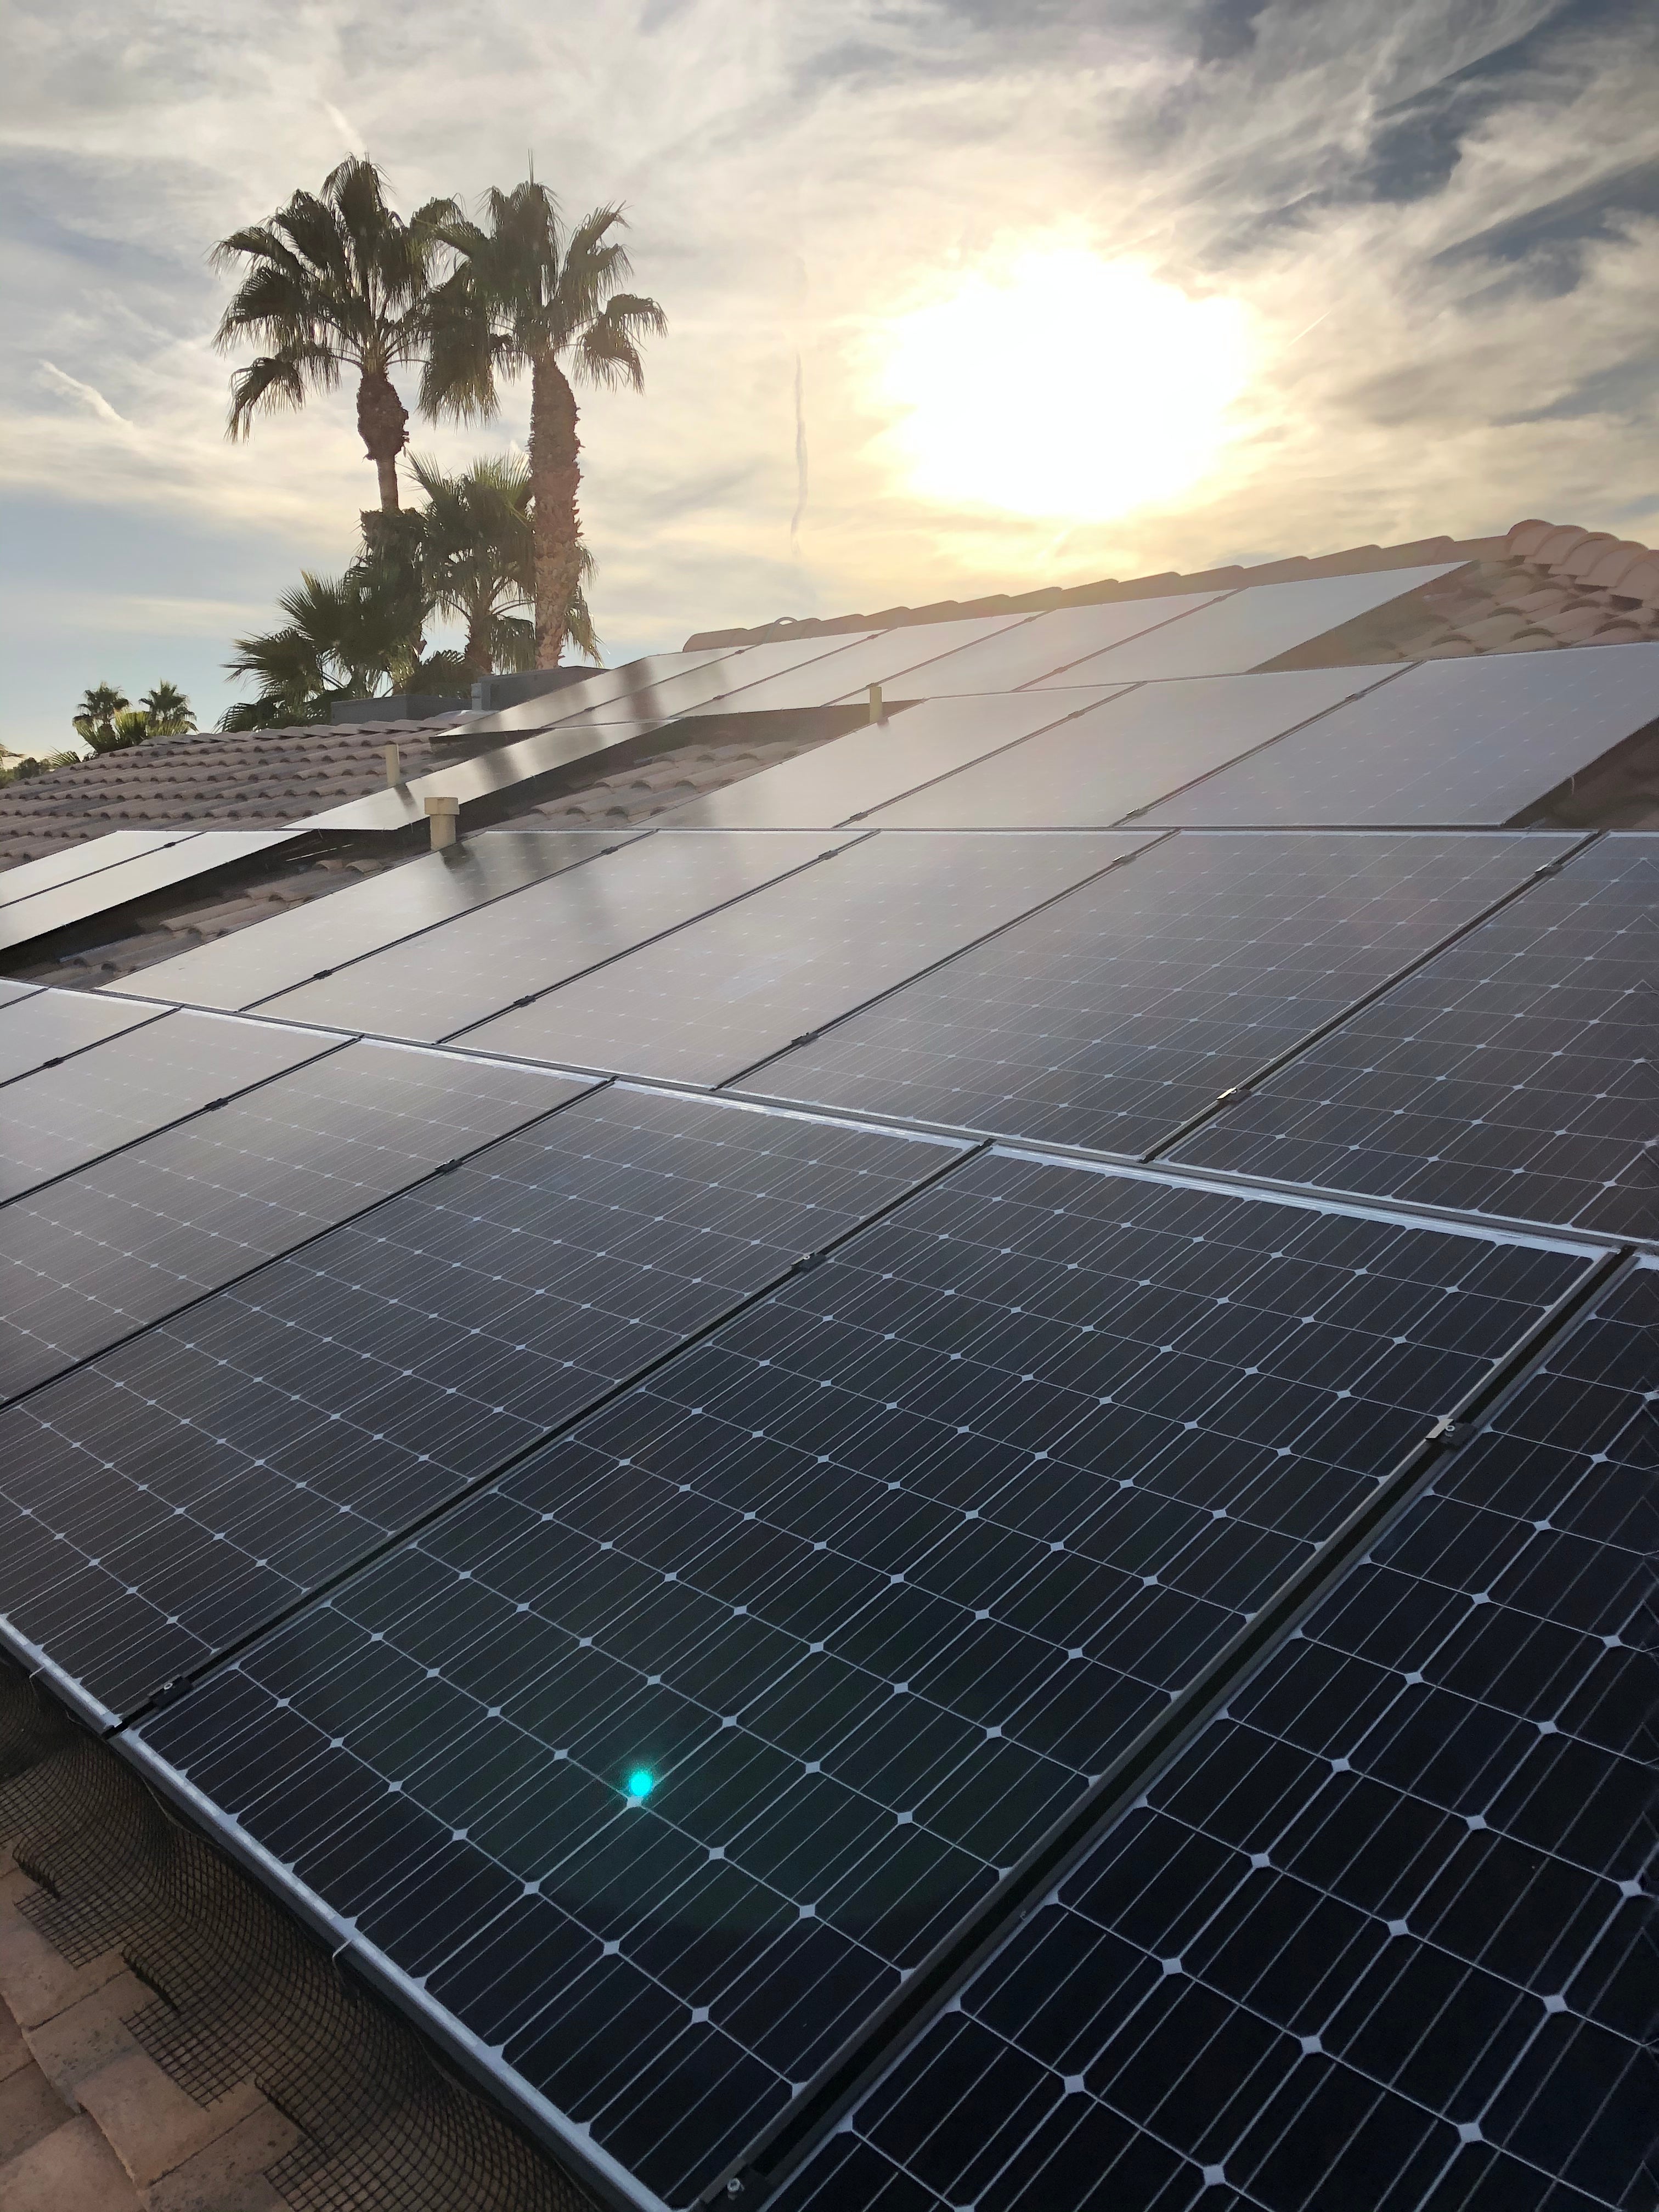 A beautiful Las Vegas sunset and a beautiful Panasonic solar panel installation!